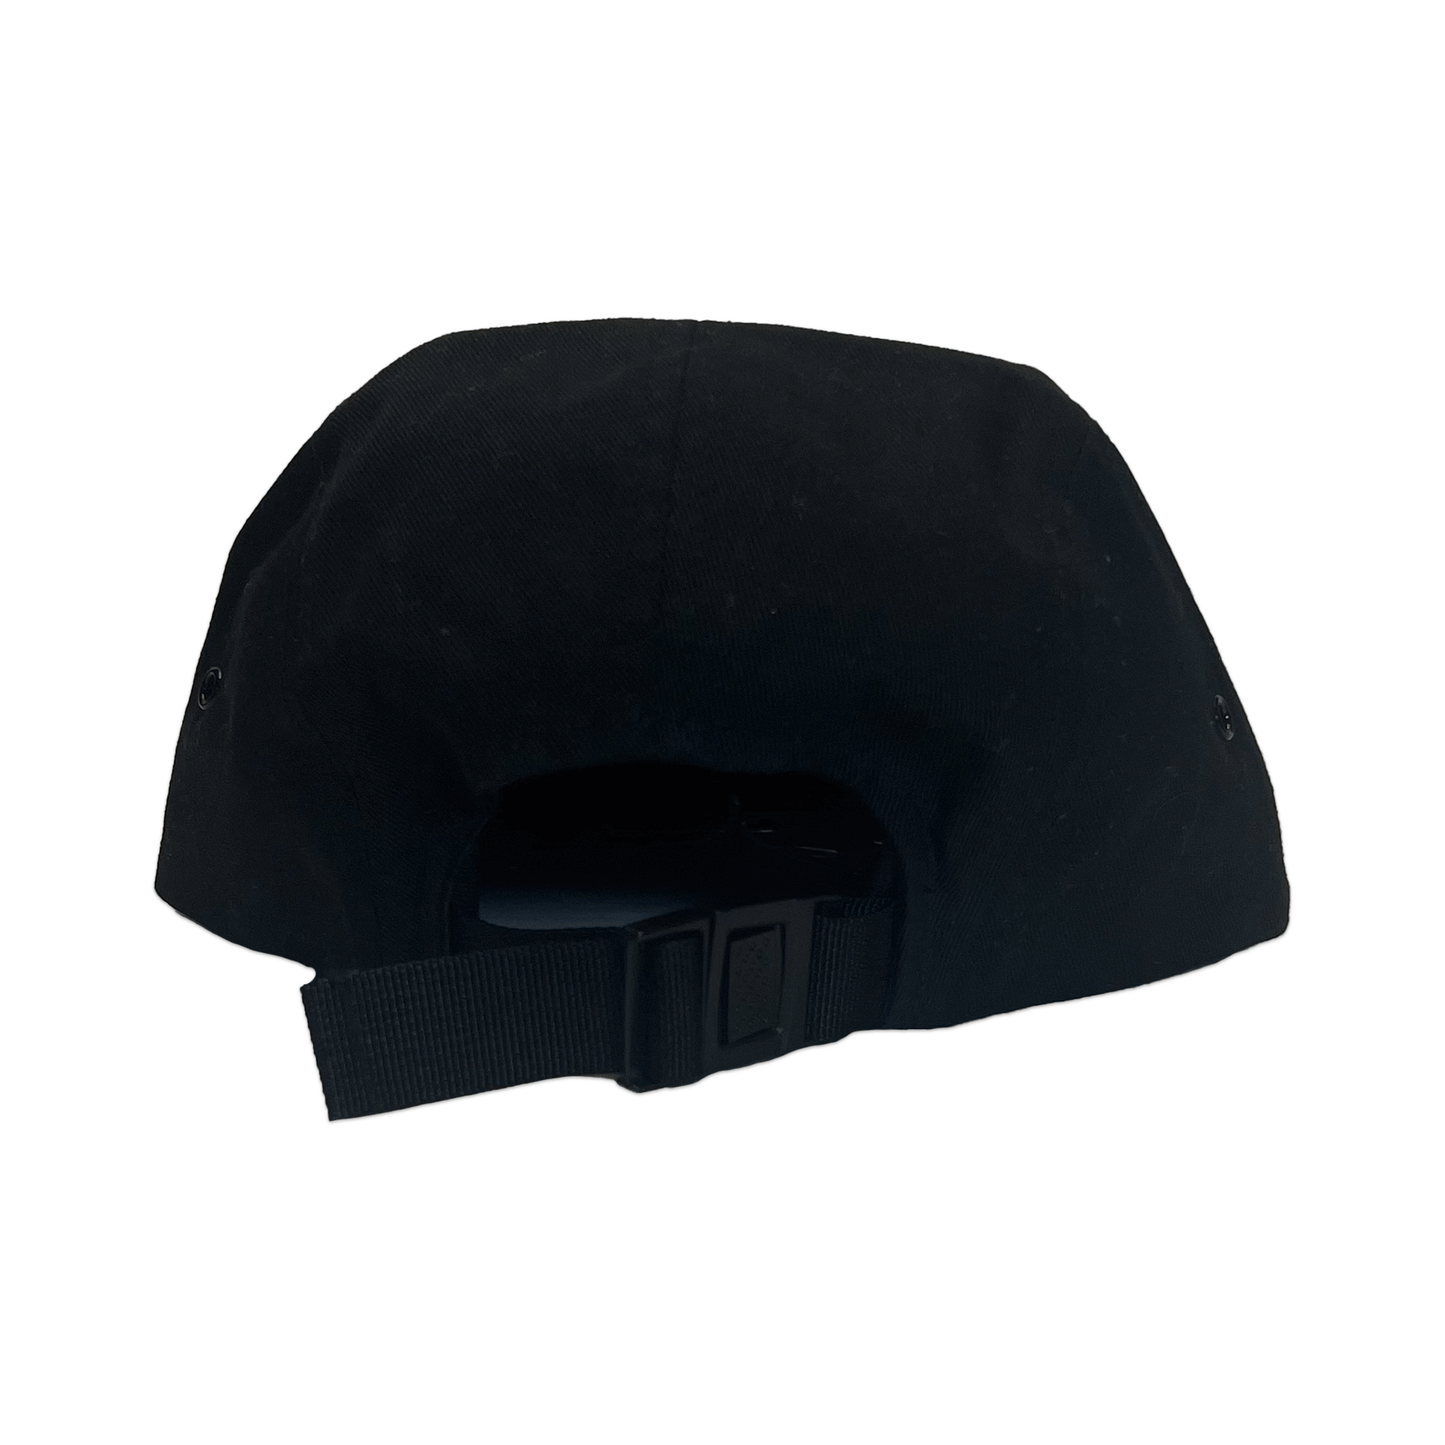 I<3Pabst. Hat. Black.